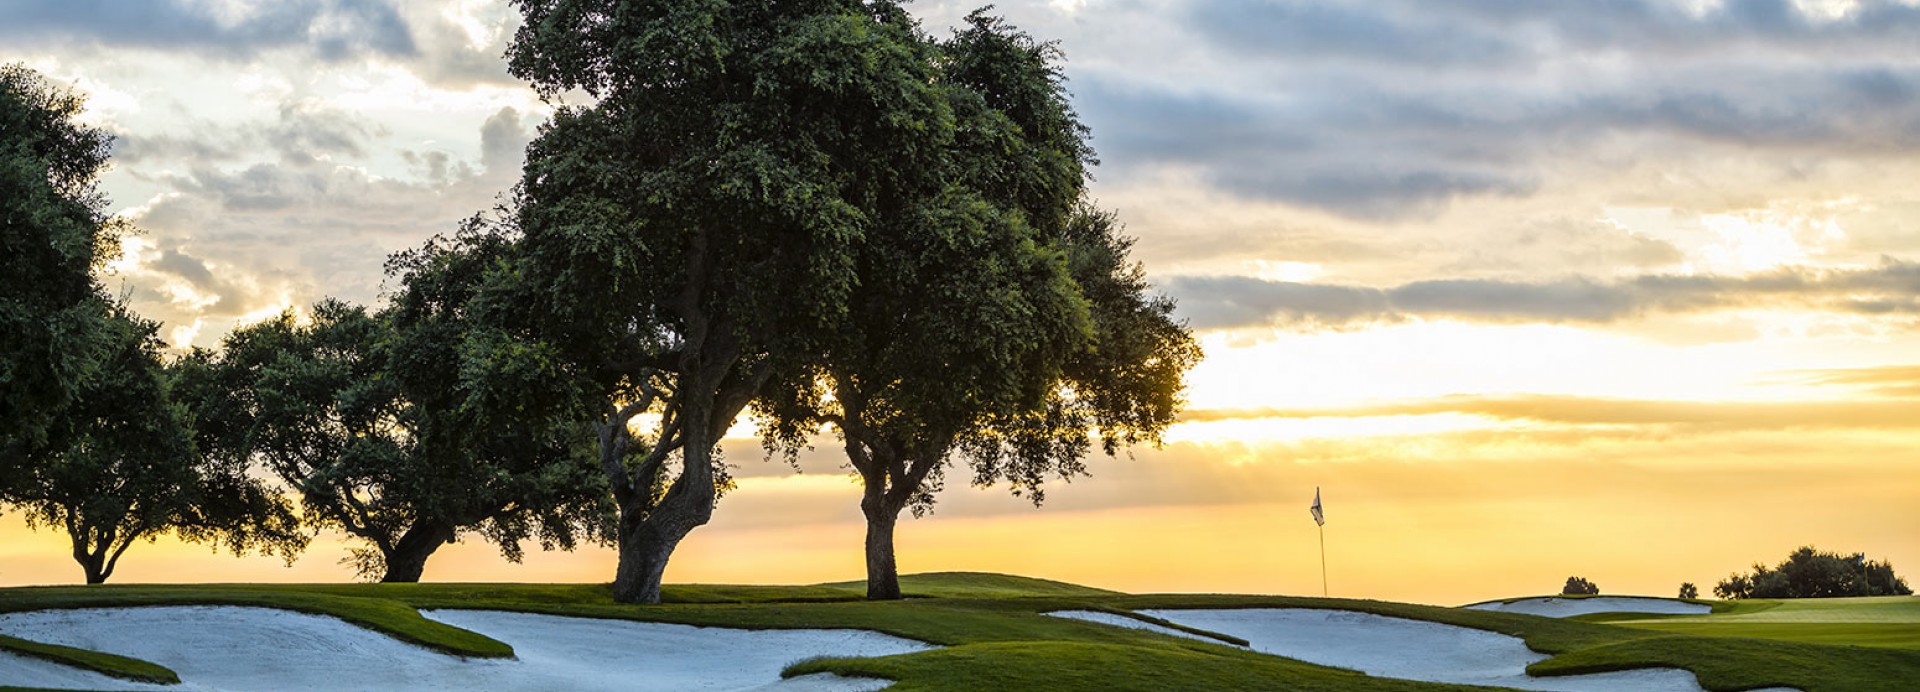 Golf La Moraleja 4  | Golfové zájezdy, golfová dovolená, luxusní golf